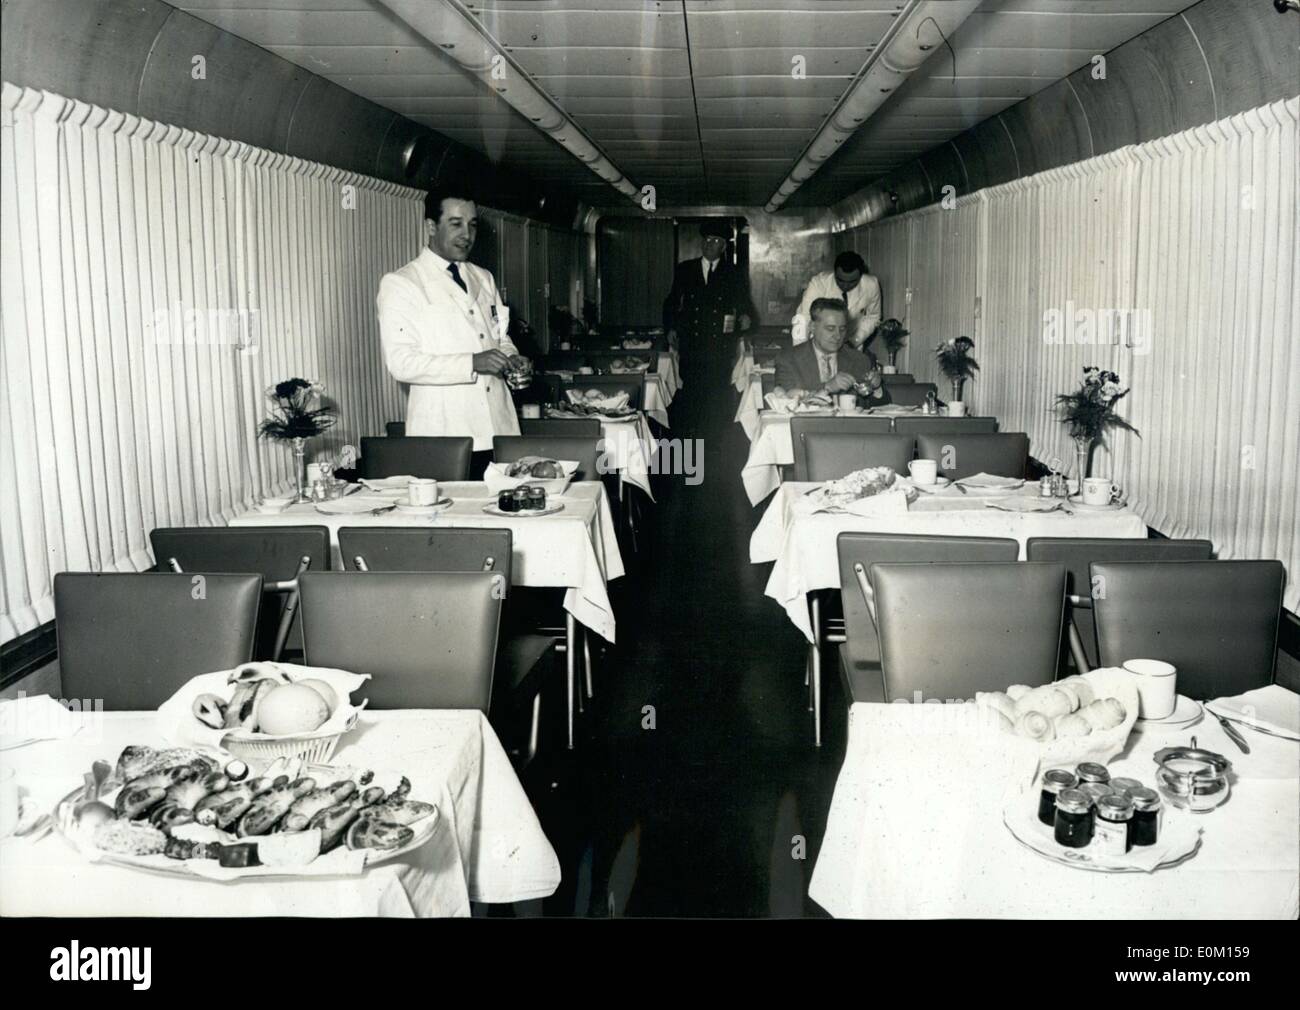 Mar 03, 1953 - Nuovo italiano Super Treno: La nuova Breda treno di lusso ha iniziato a regolare servizio di collegamento tra Milano e Napoli in 8 ore a media spped di 100km, per ora. La foto mostra la sala da pranzo. Foto Stock